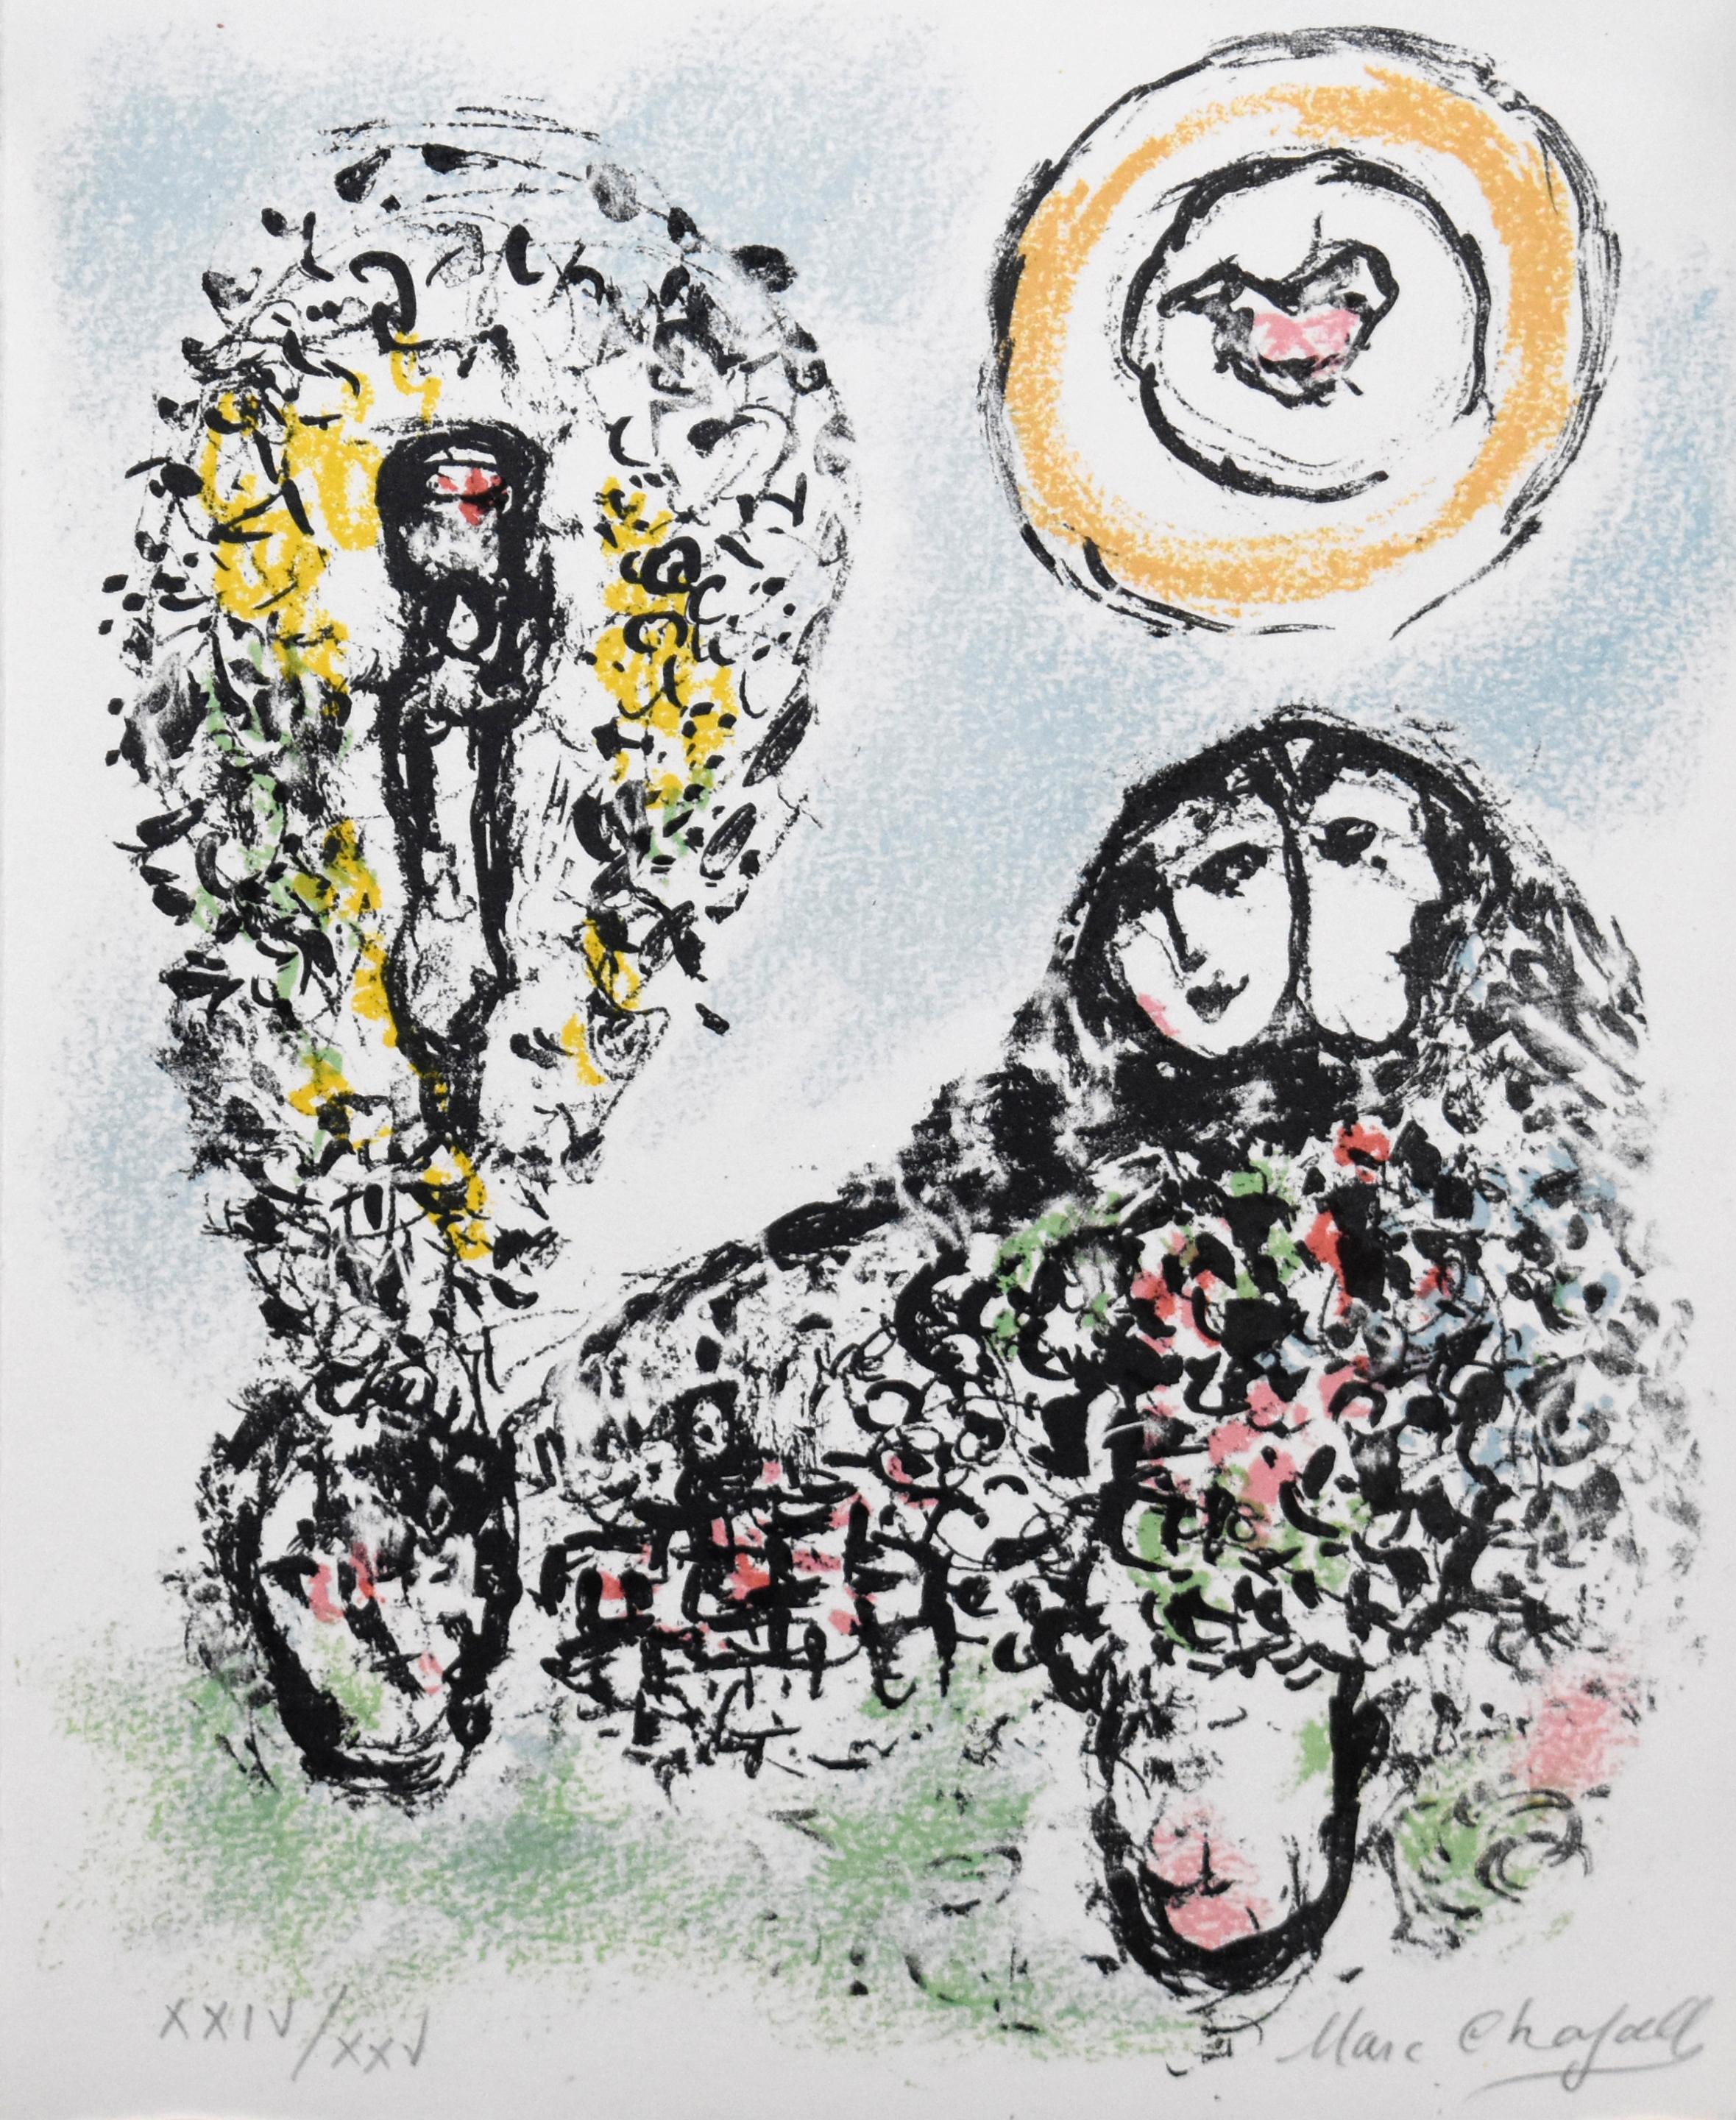 La Mise en Mots - Print by Marc Chagall